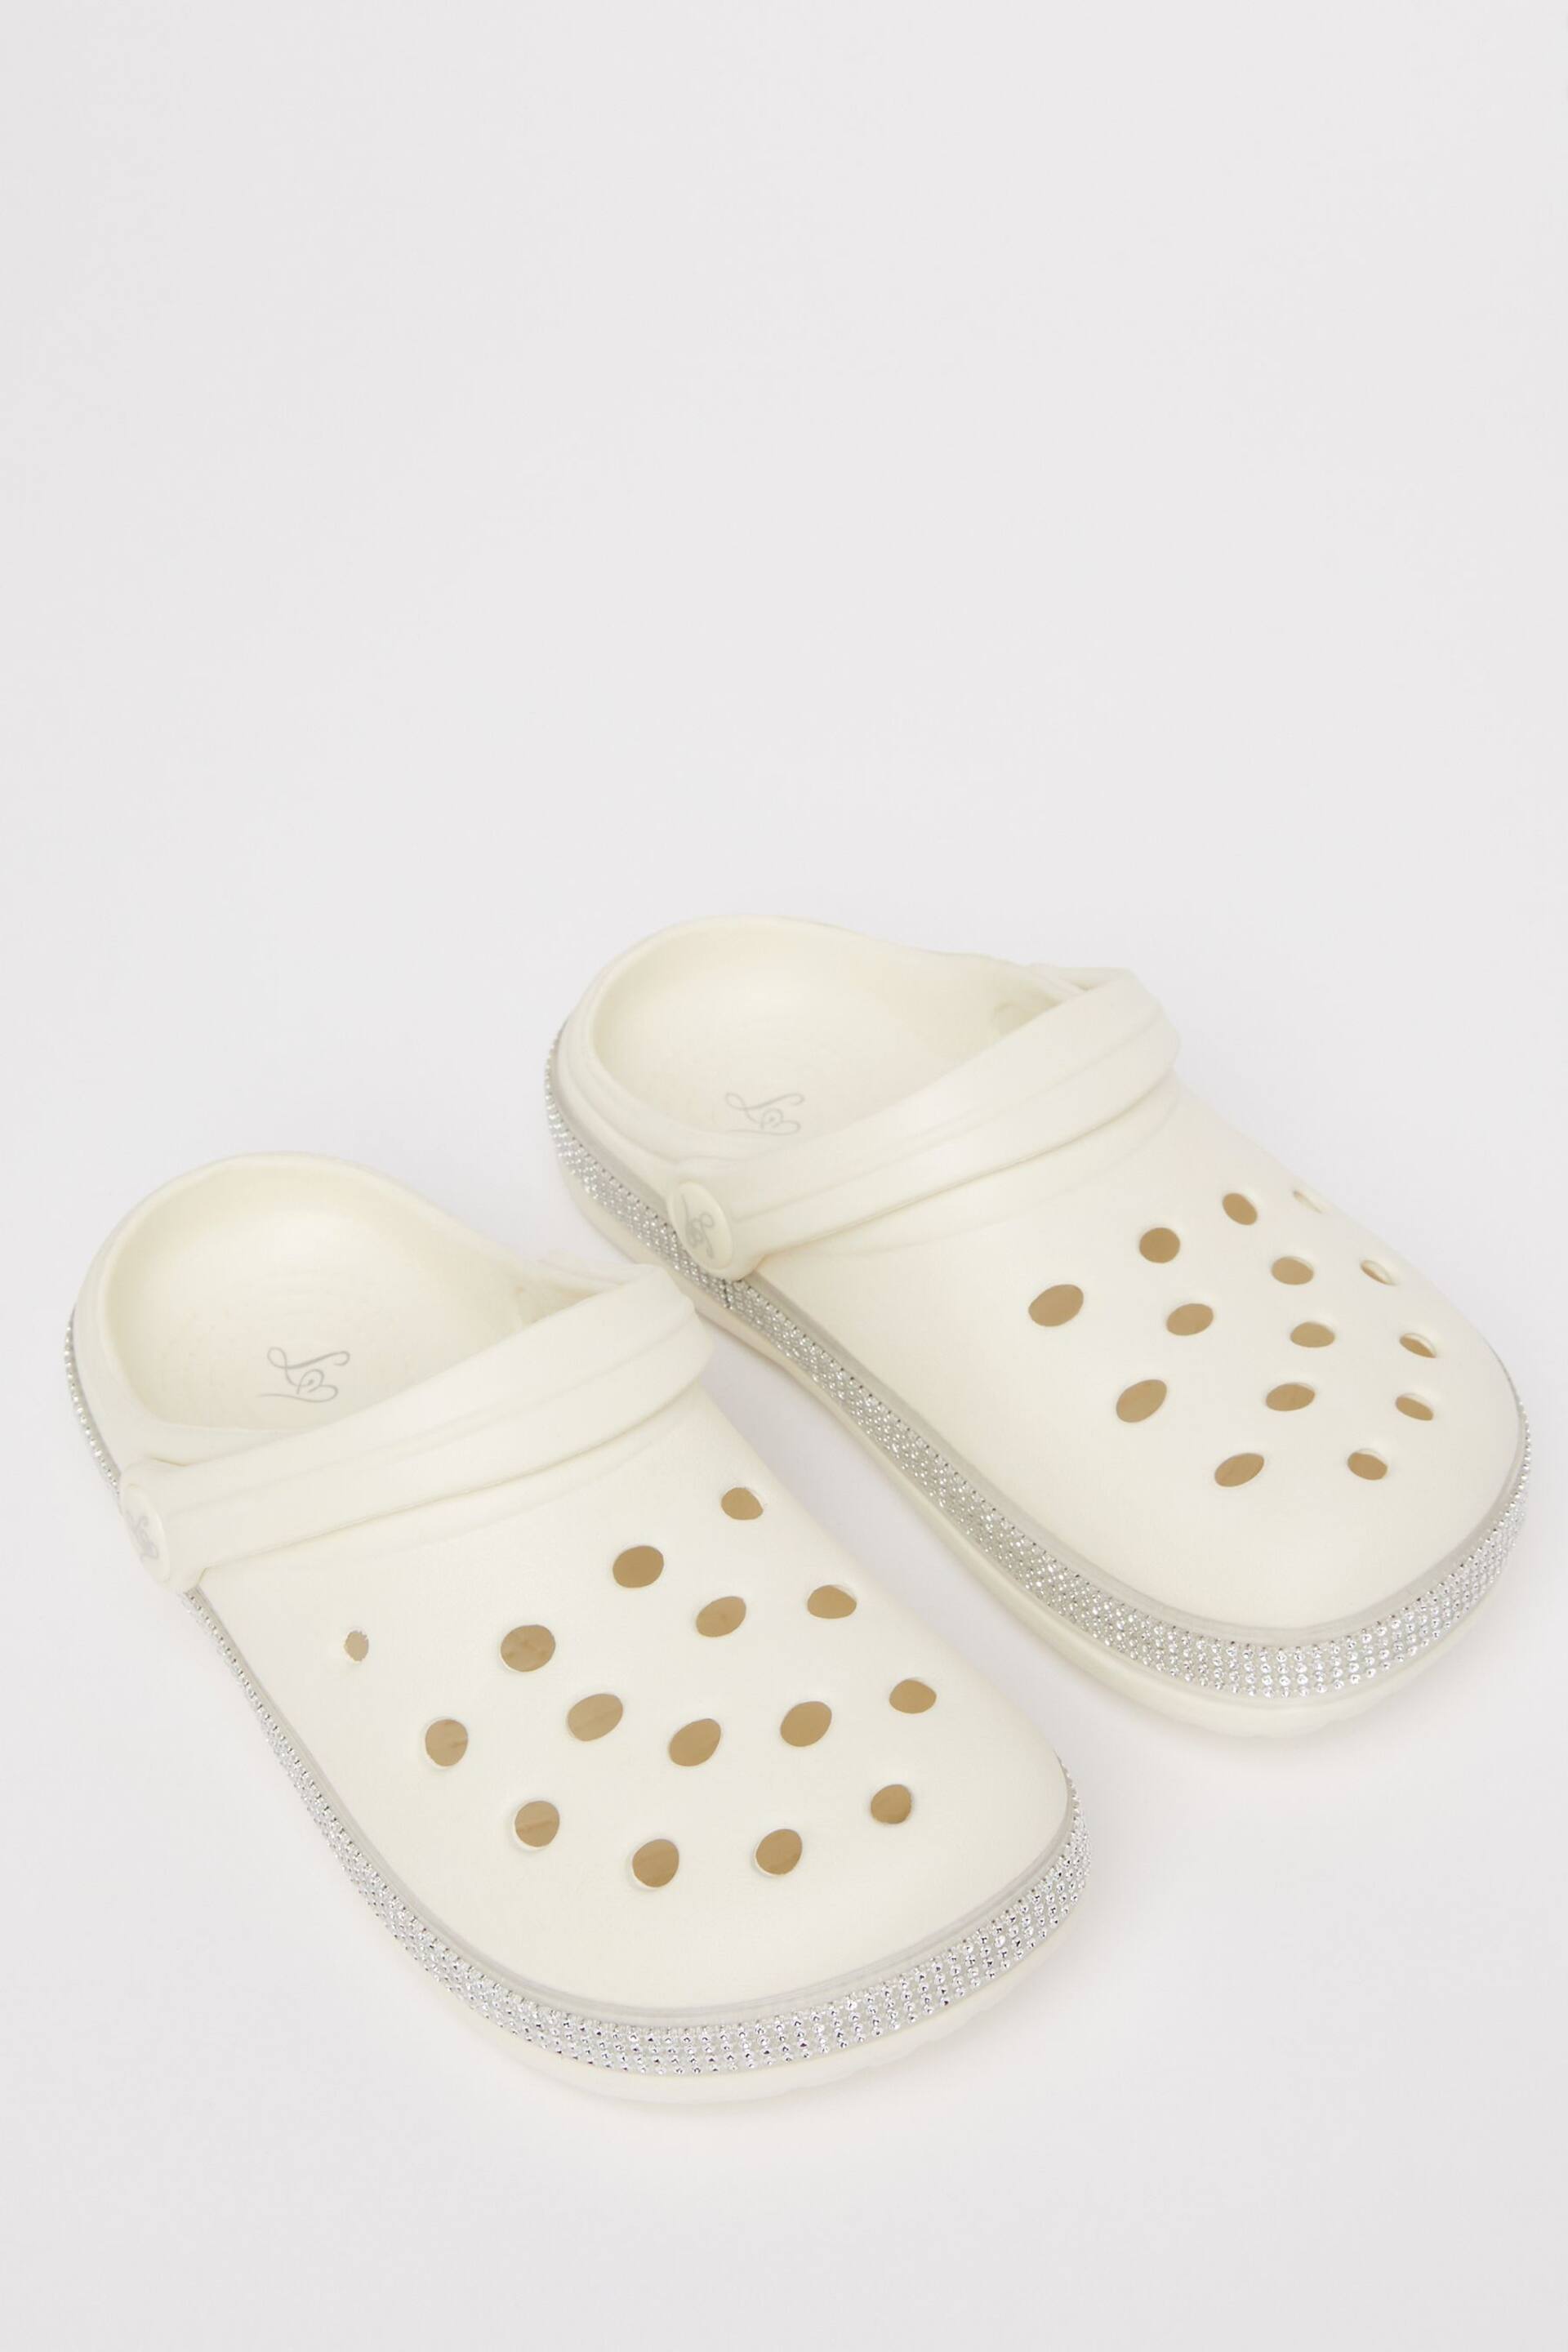 Lipsy White Slip On Glitter Clog Sandals - Image 1 of 4